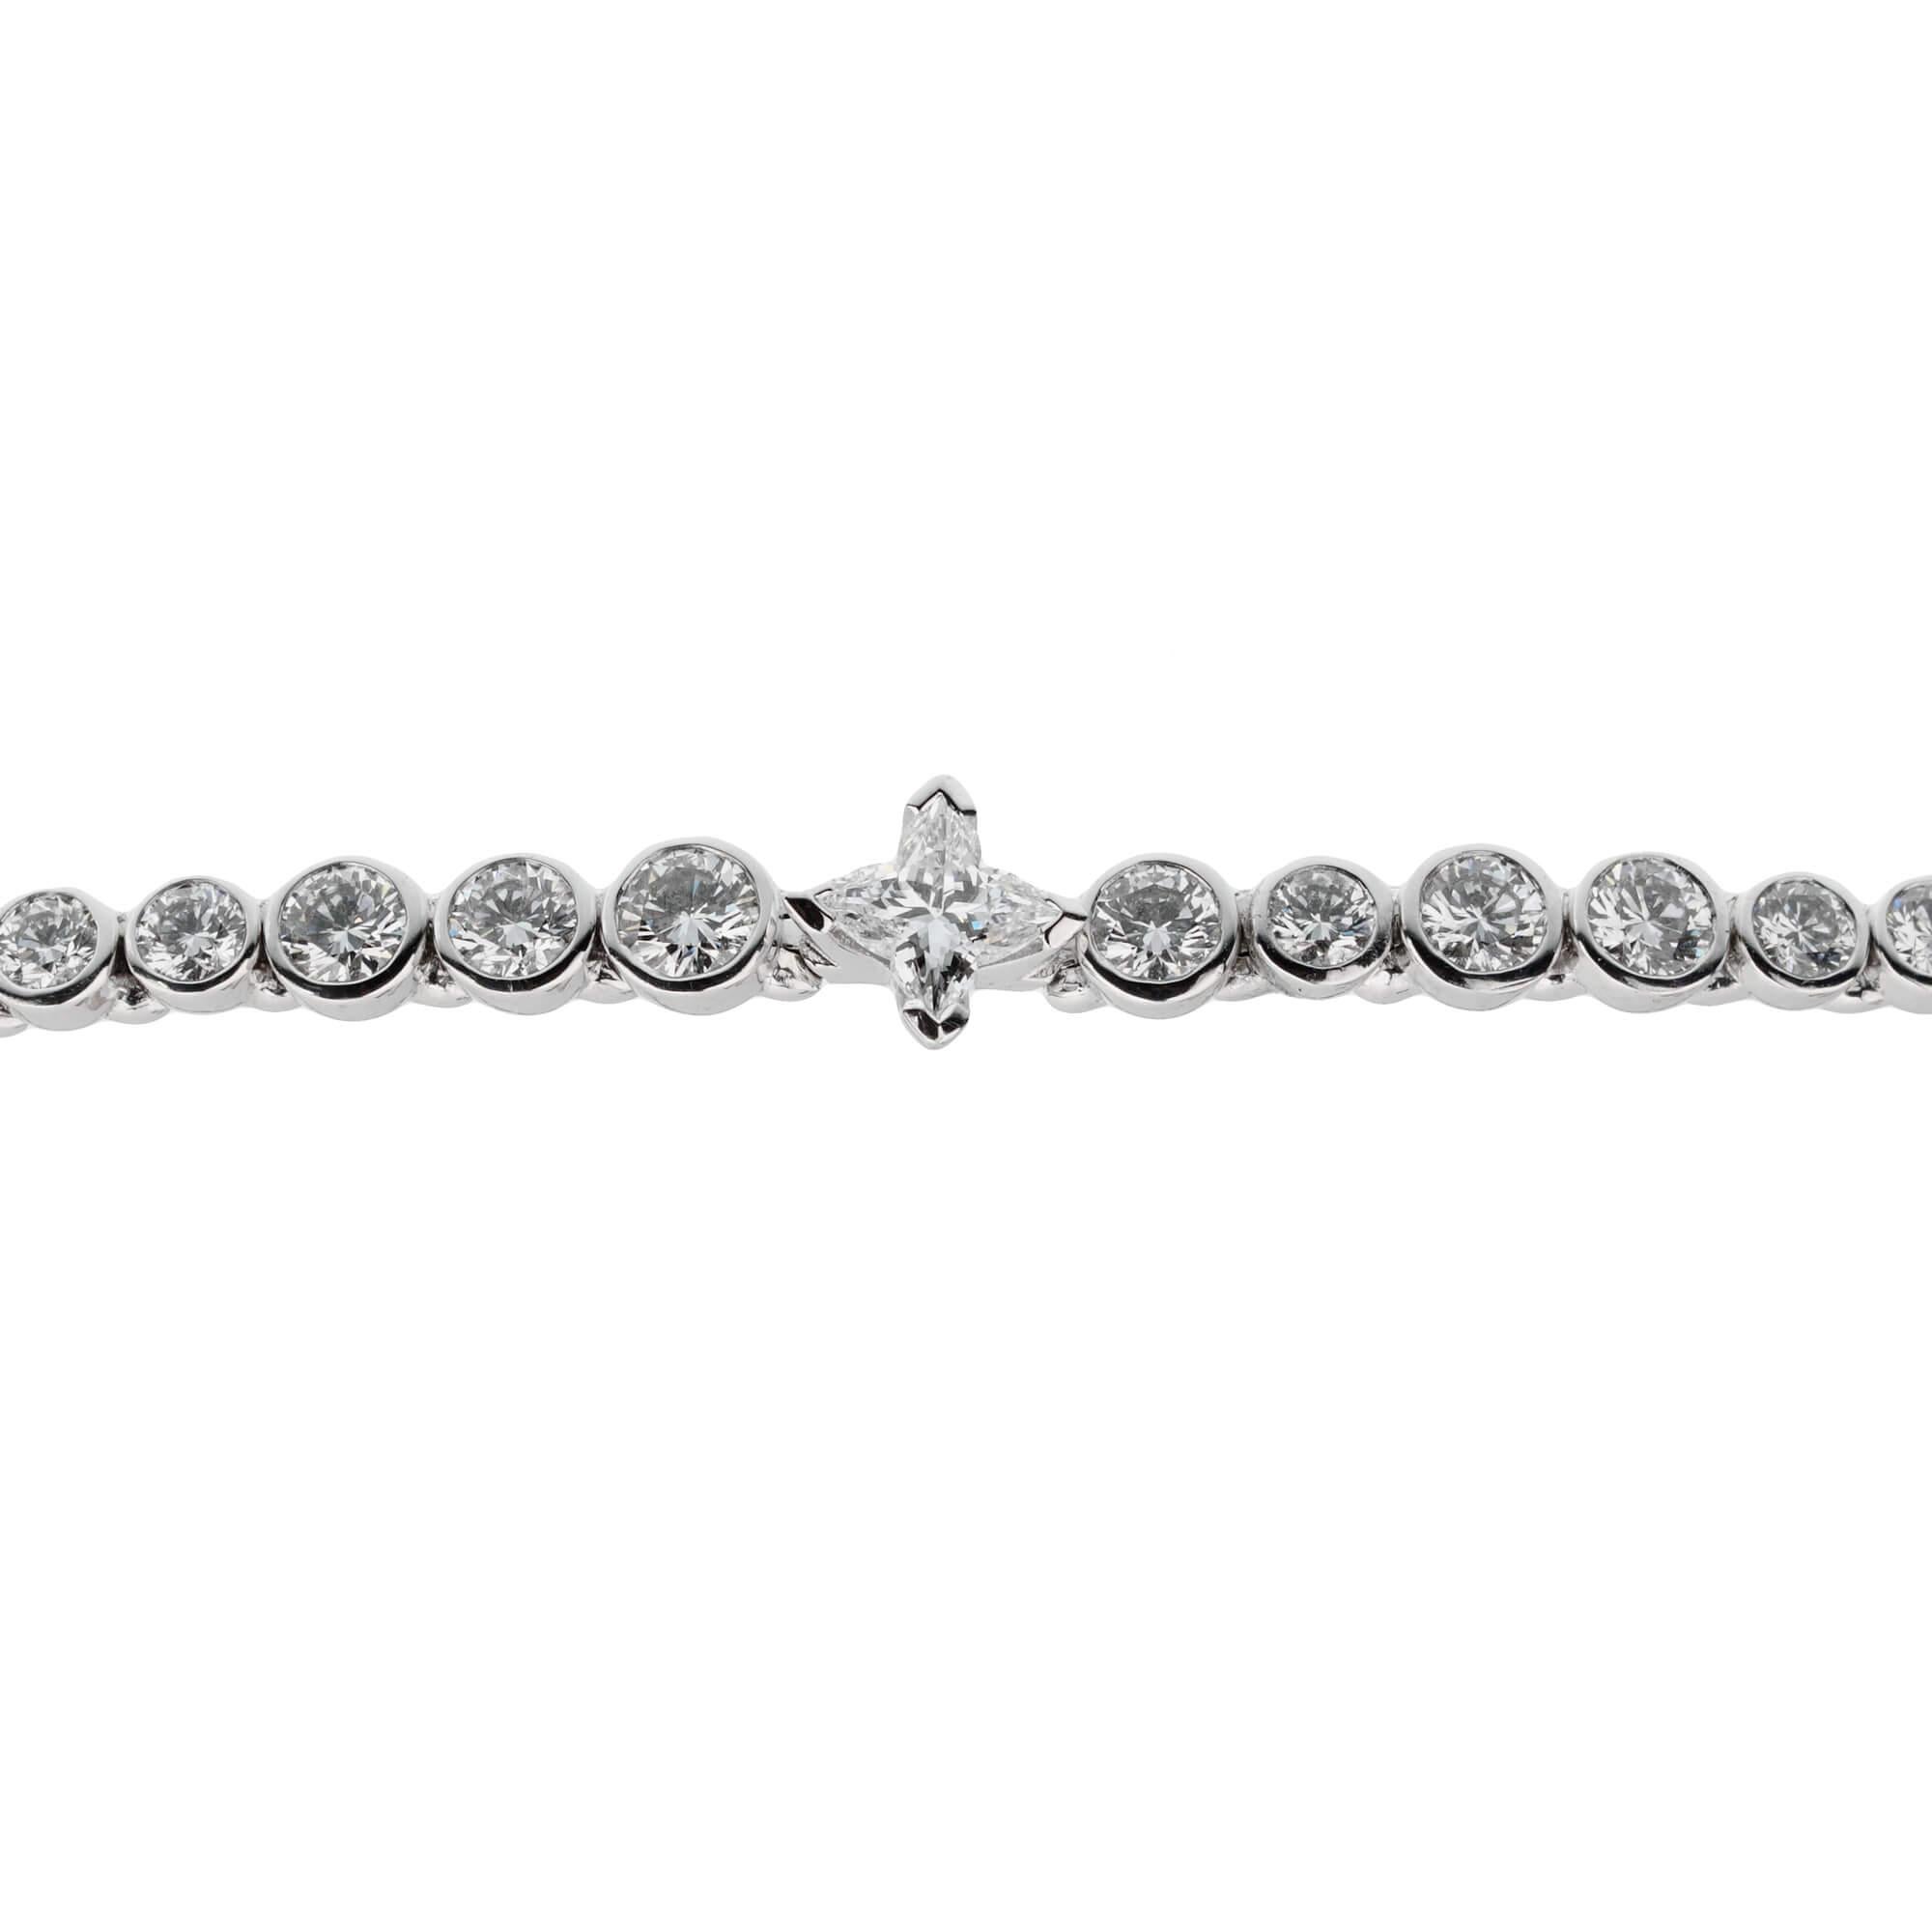 Cet incroyable bracelet de tennis Louis Vuitton présente des diamants ronds de taille alternée, un diamant central de forme emblématique Les Ardentes et des diamants baguettes en or blanc 18 carats très brillant.

5ct Appx Poids du diamant